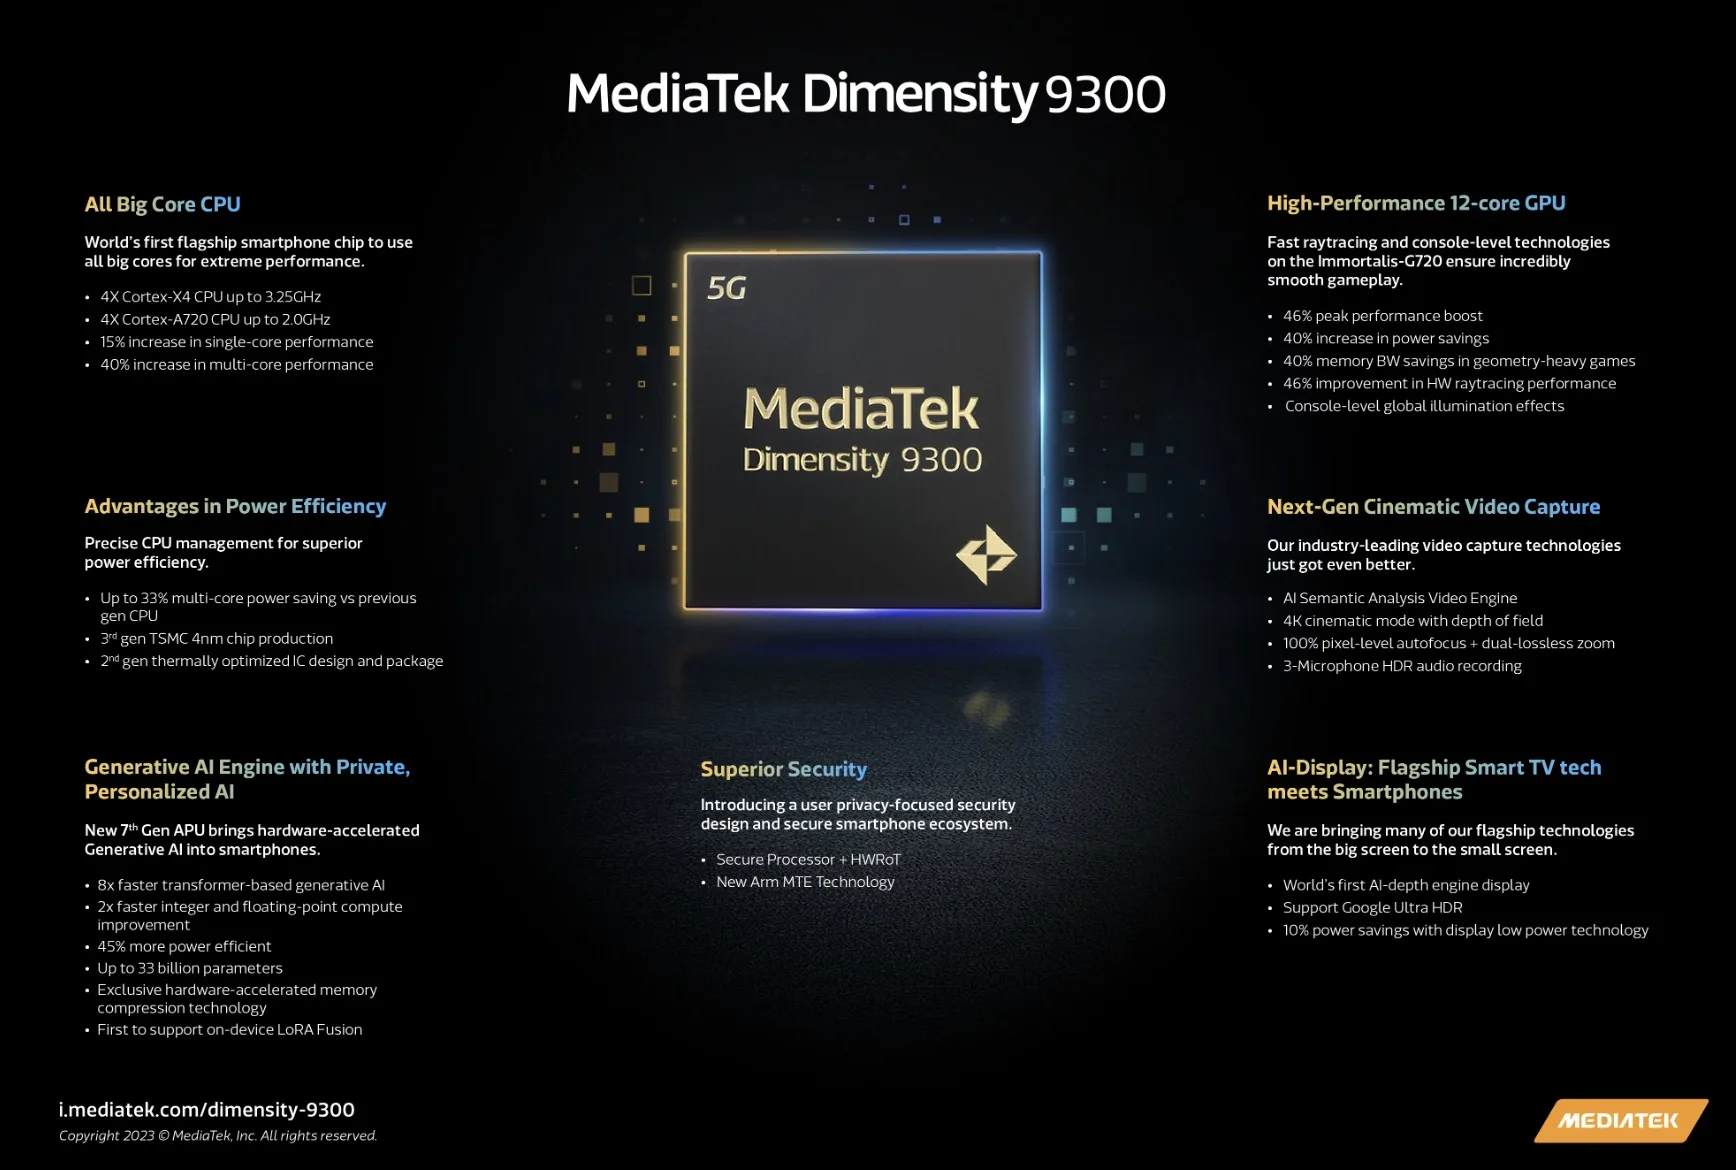 Dimensity 9300 ra mắt với thiết kế All Big Core mới